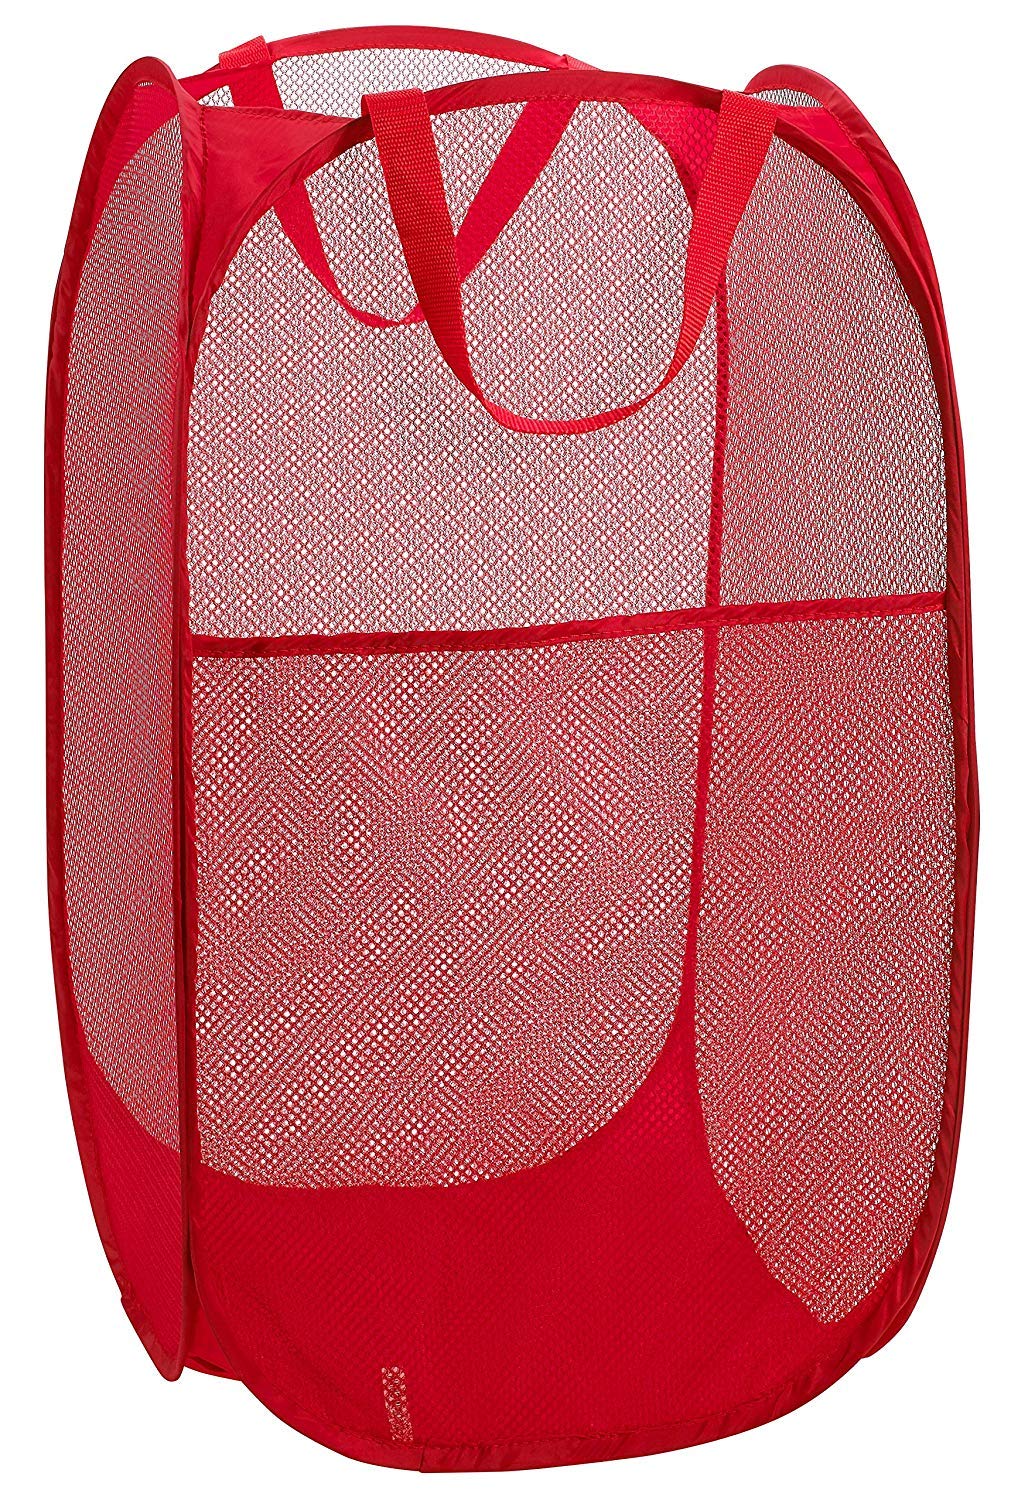 Kuber Industries Nylon Mesh Laundry Basket, 30Ltr (Multi)-CTKTC26003